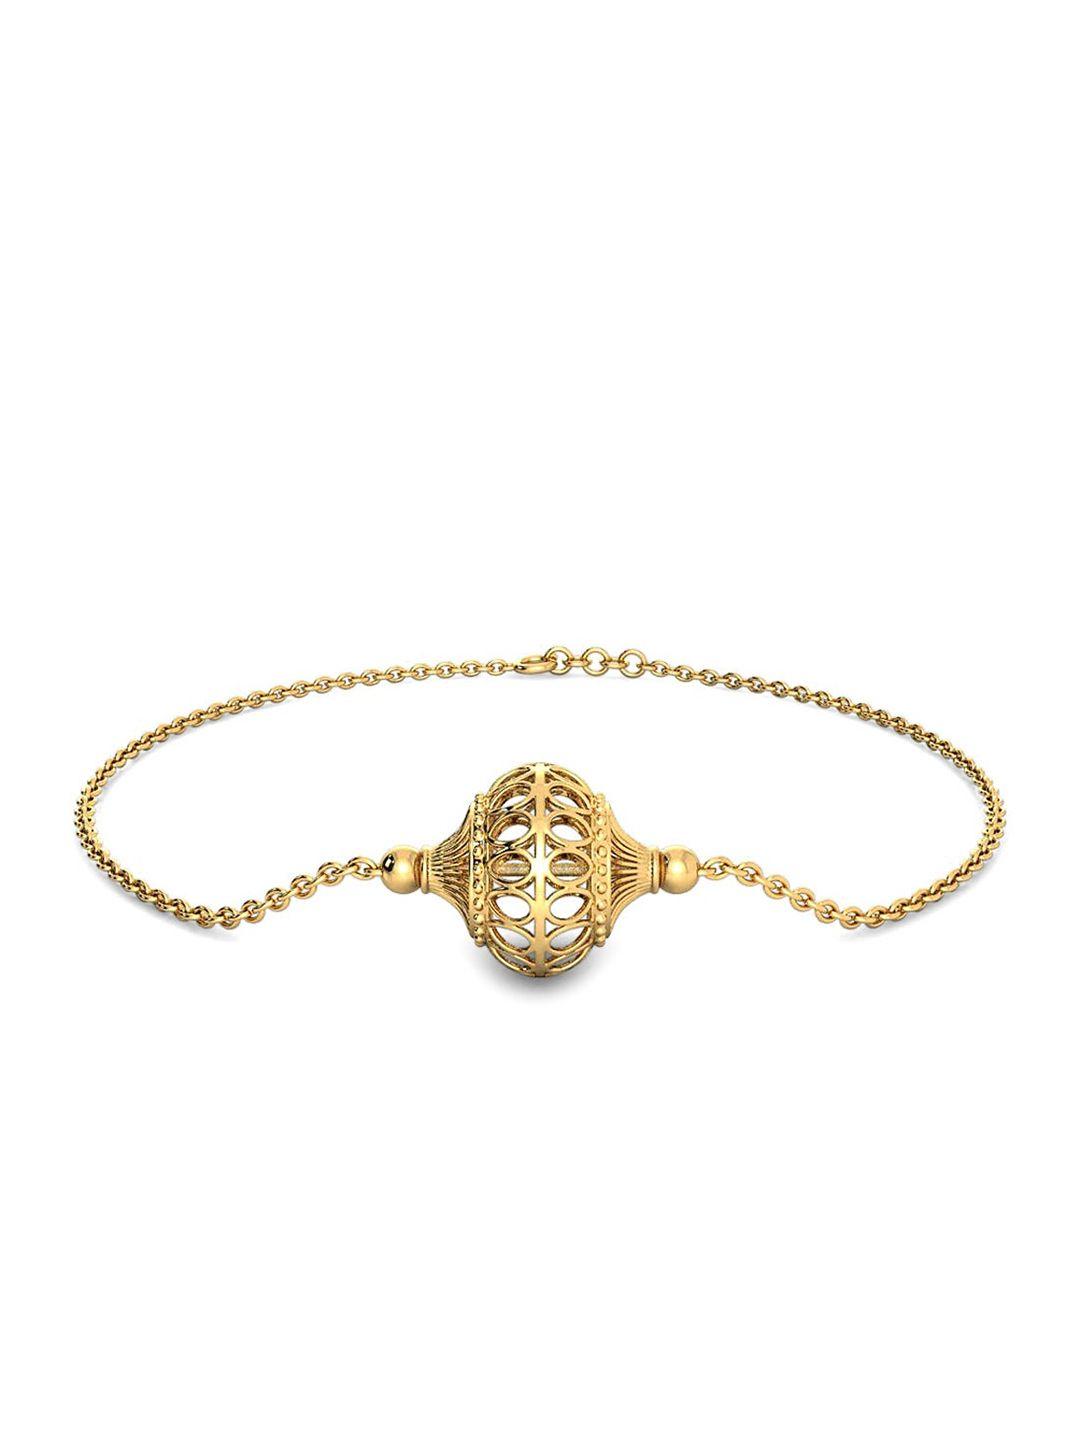 candere a kalyan jewellers company 18kt gold bracelet -2.65gm